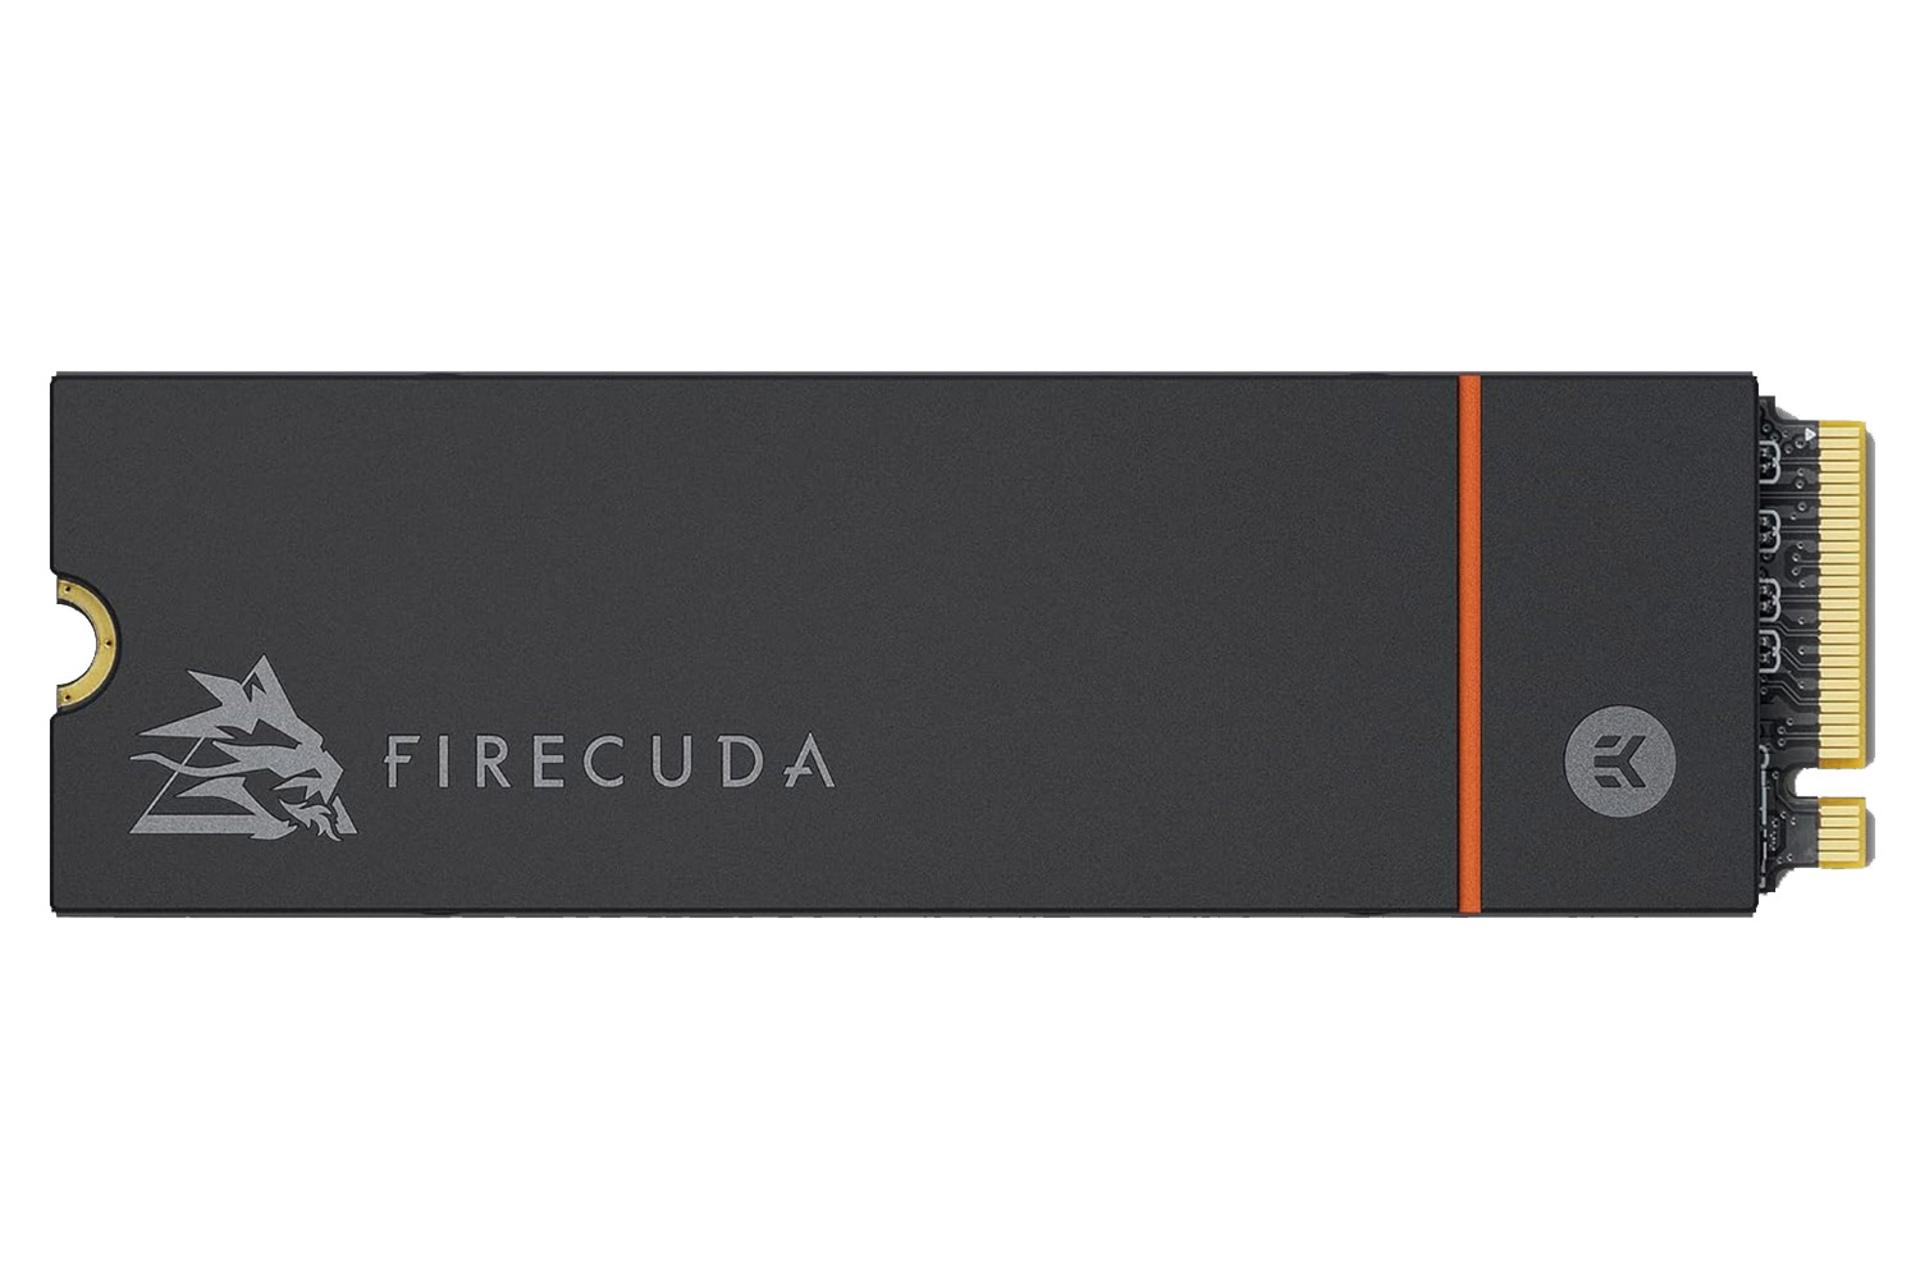 ابعاد و اندازه اس اس دی سیگیت FireCuda 530 NVMe M.2 ظرفیت 4 ترابایت